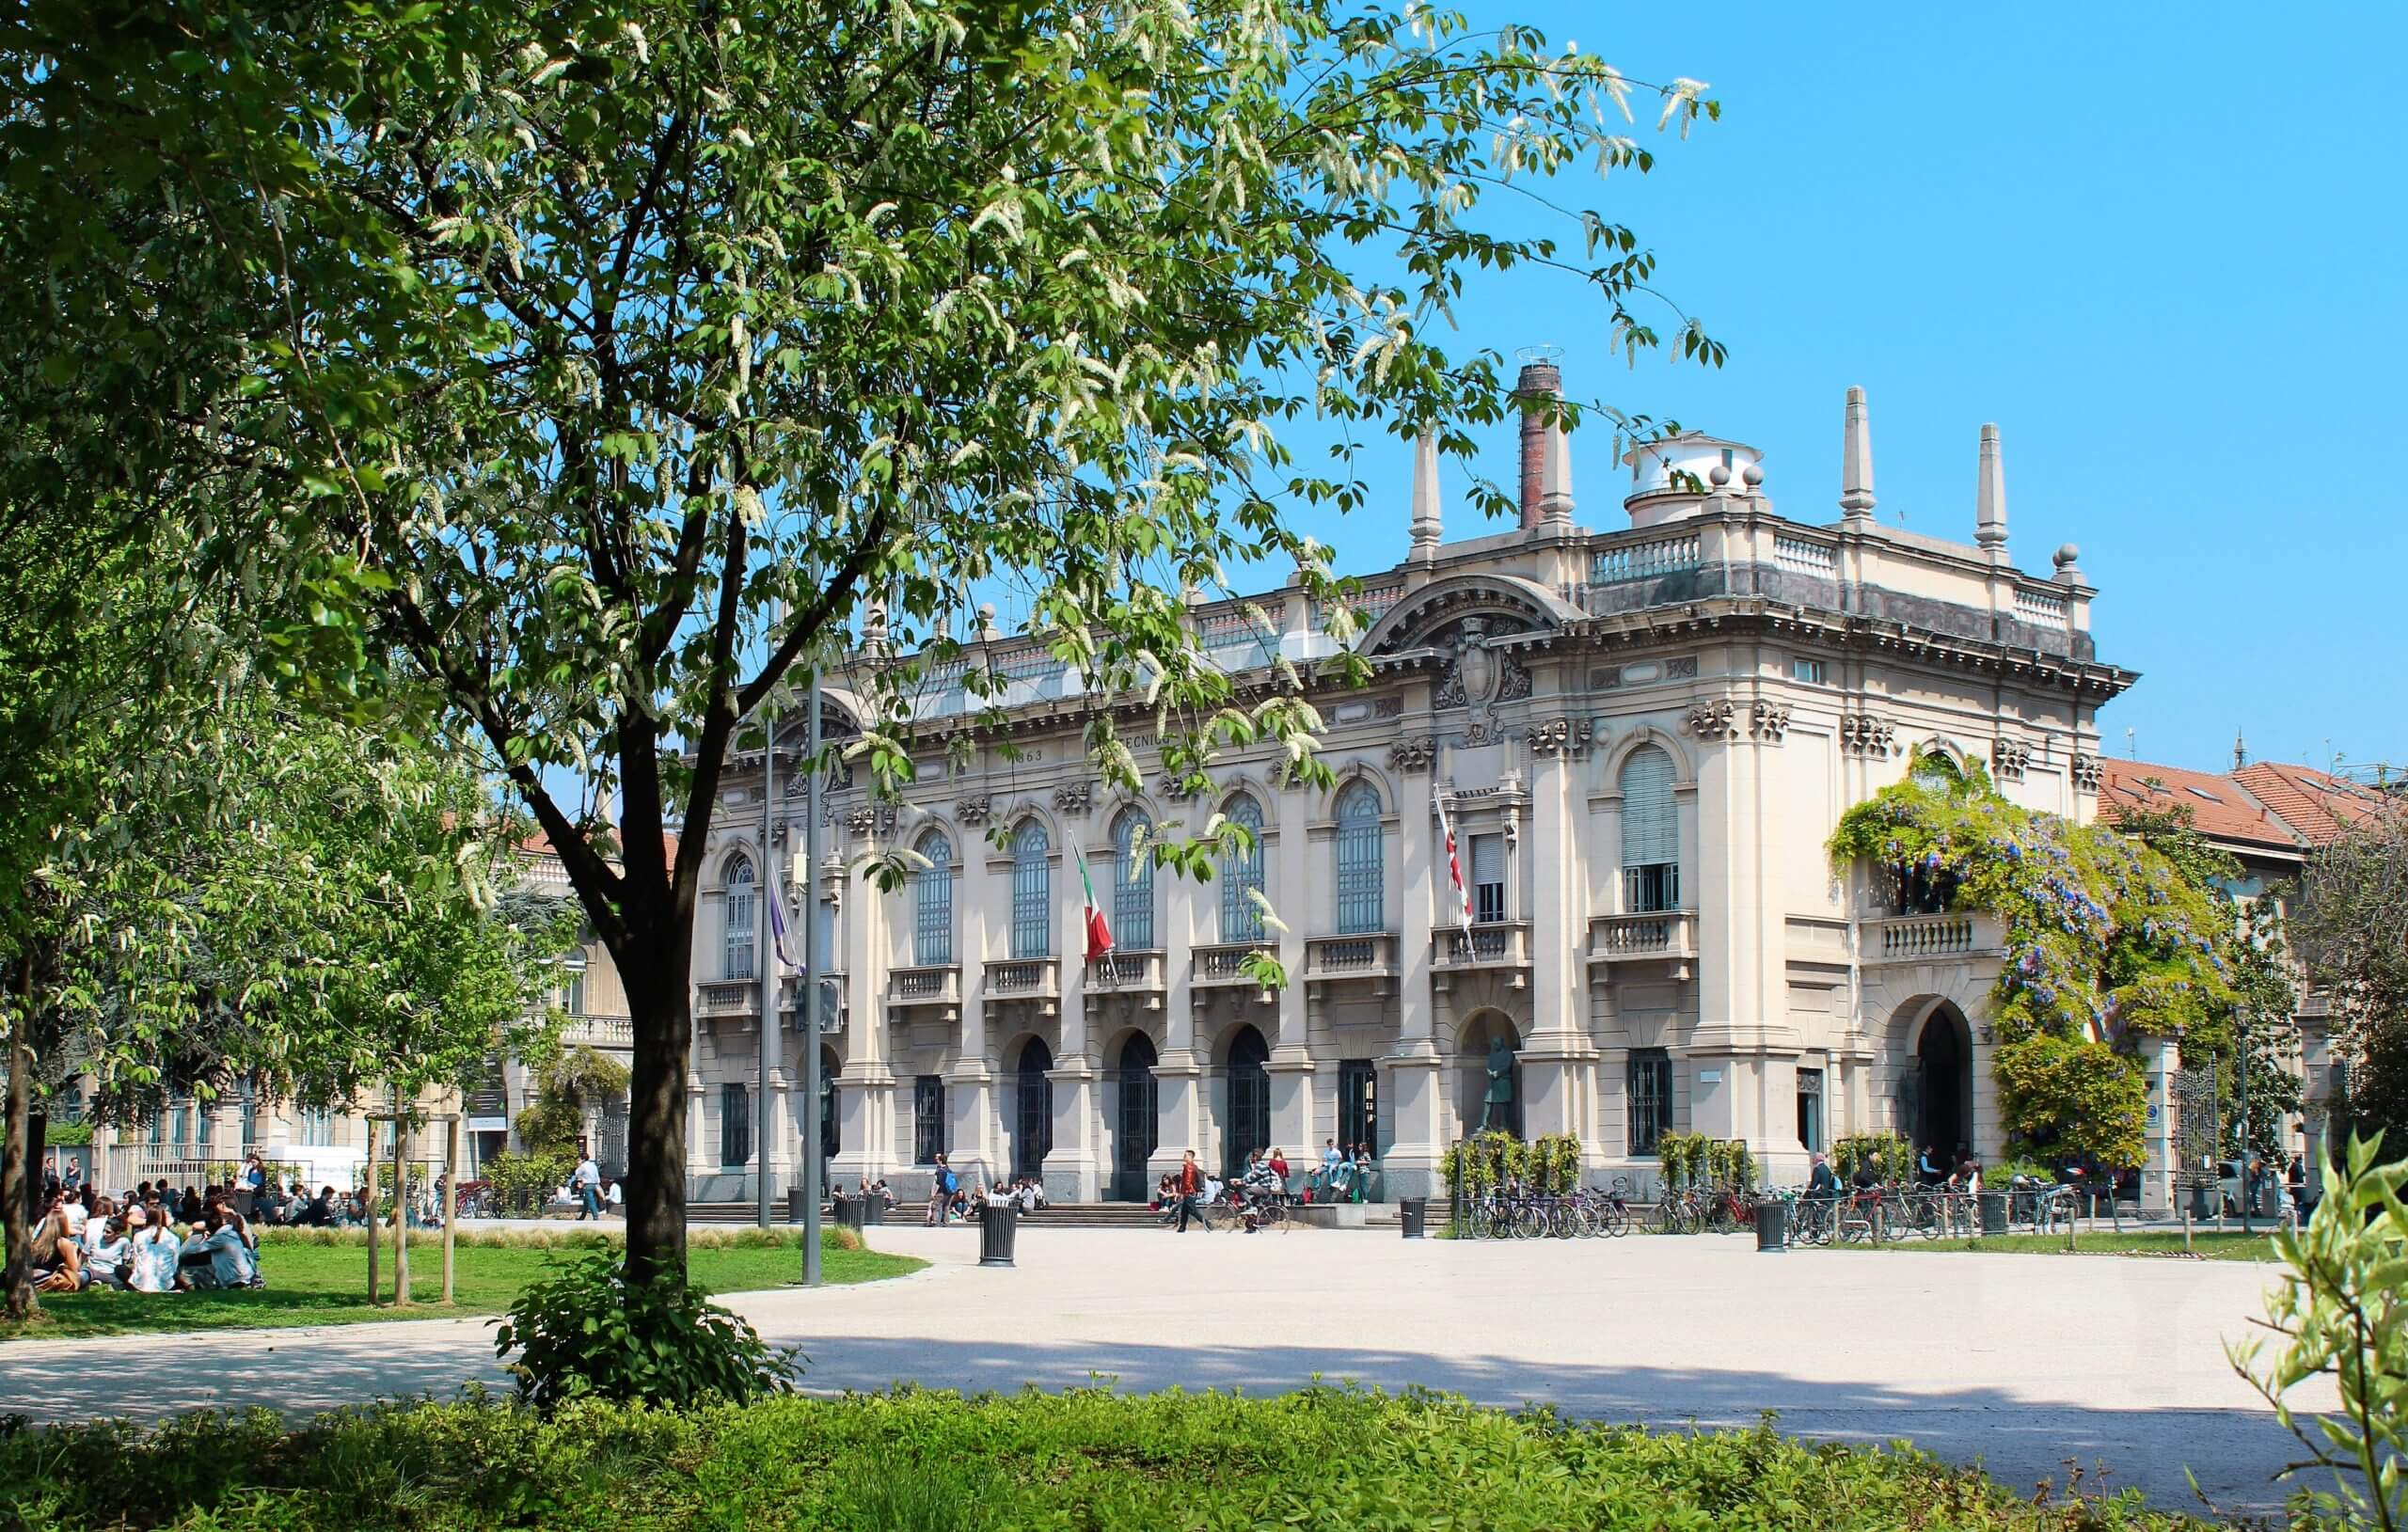 Đại học Bách khoa Milan là ngôi trường có chất lượng đào tạo cao tại Ý